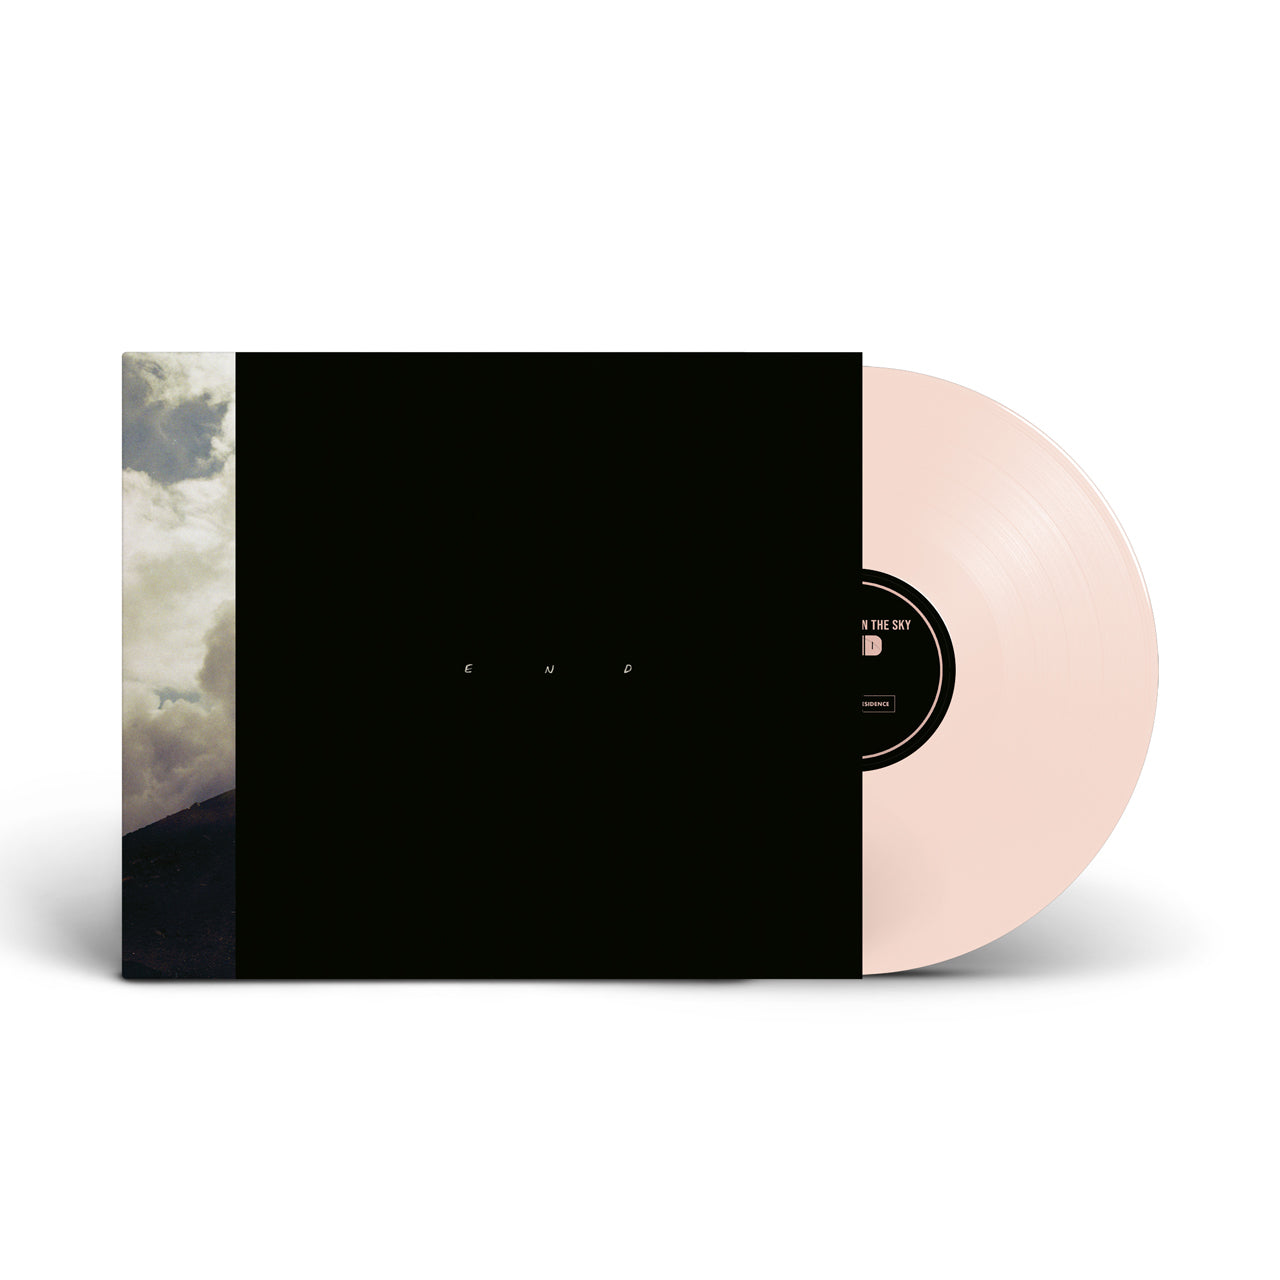 End - Webstore Exclusive Pink Vinyl